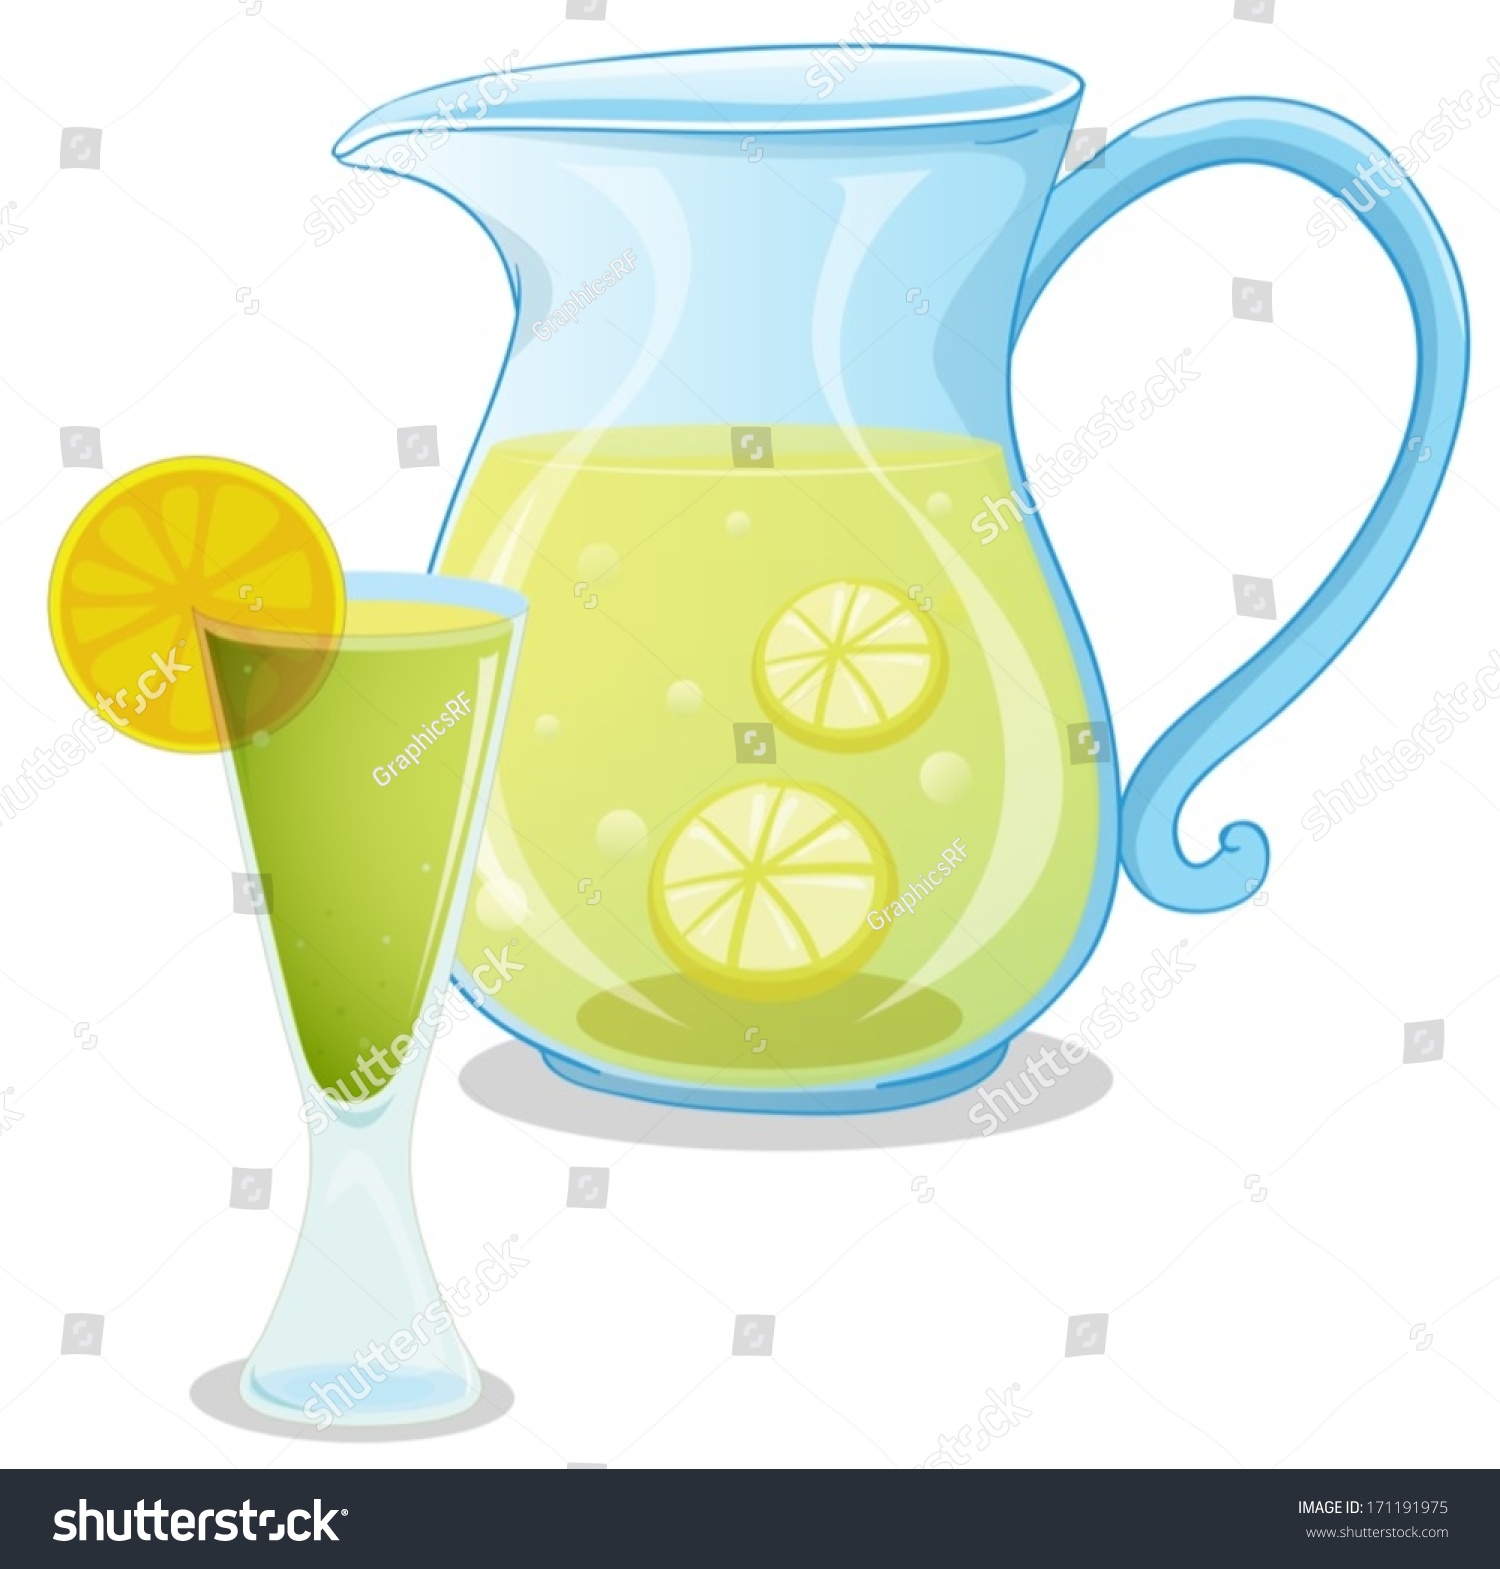 clipart lemonade pitcher - photo #33